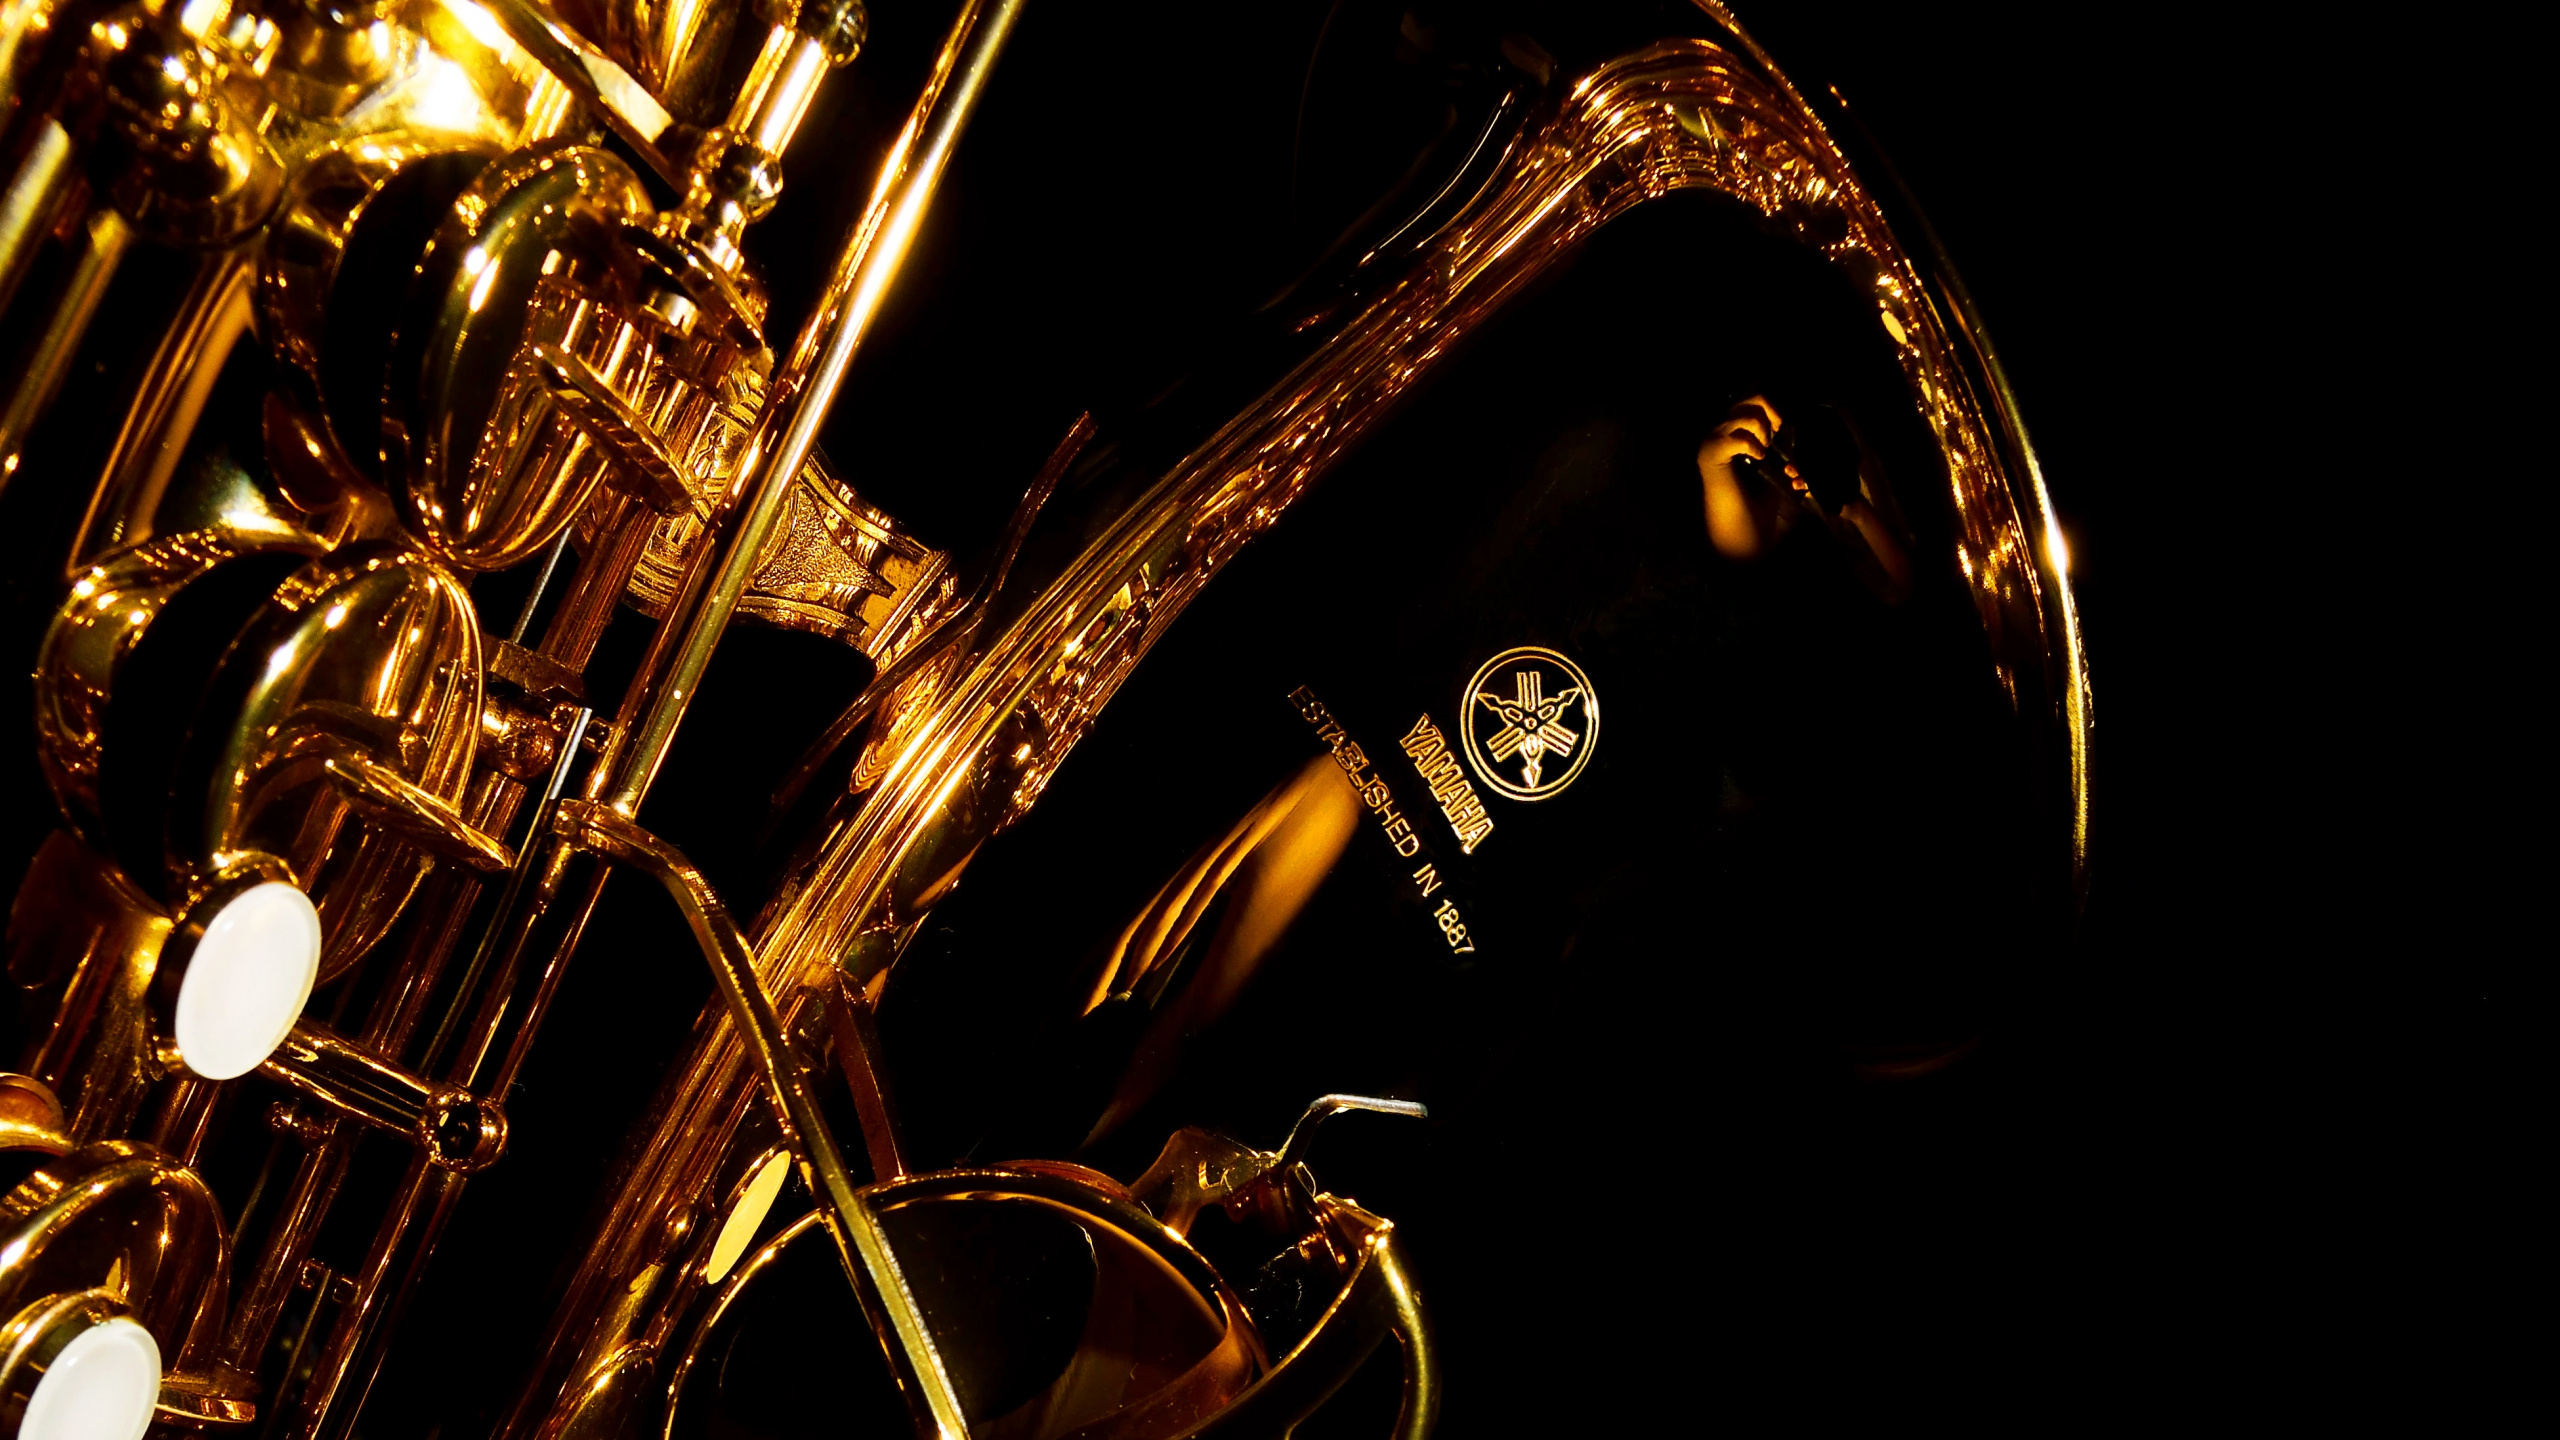 Trompette, Saxophone, Instrument de Cuivre, Instrument à Vent, Instrument de Musique. Wallpaper in 2560x1440 Resolution